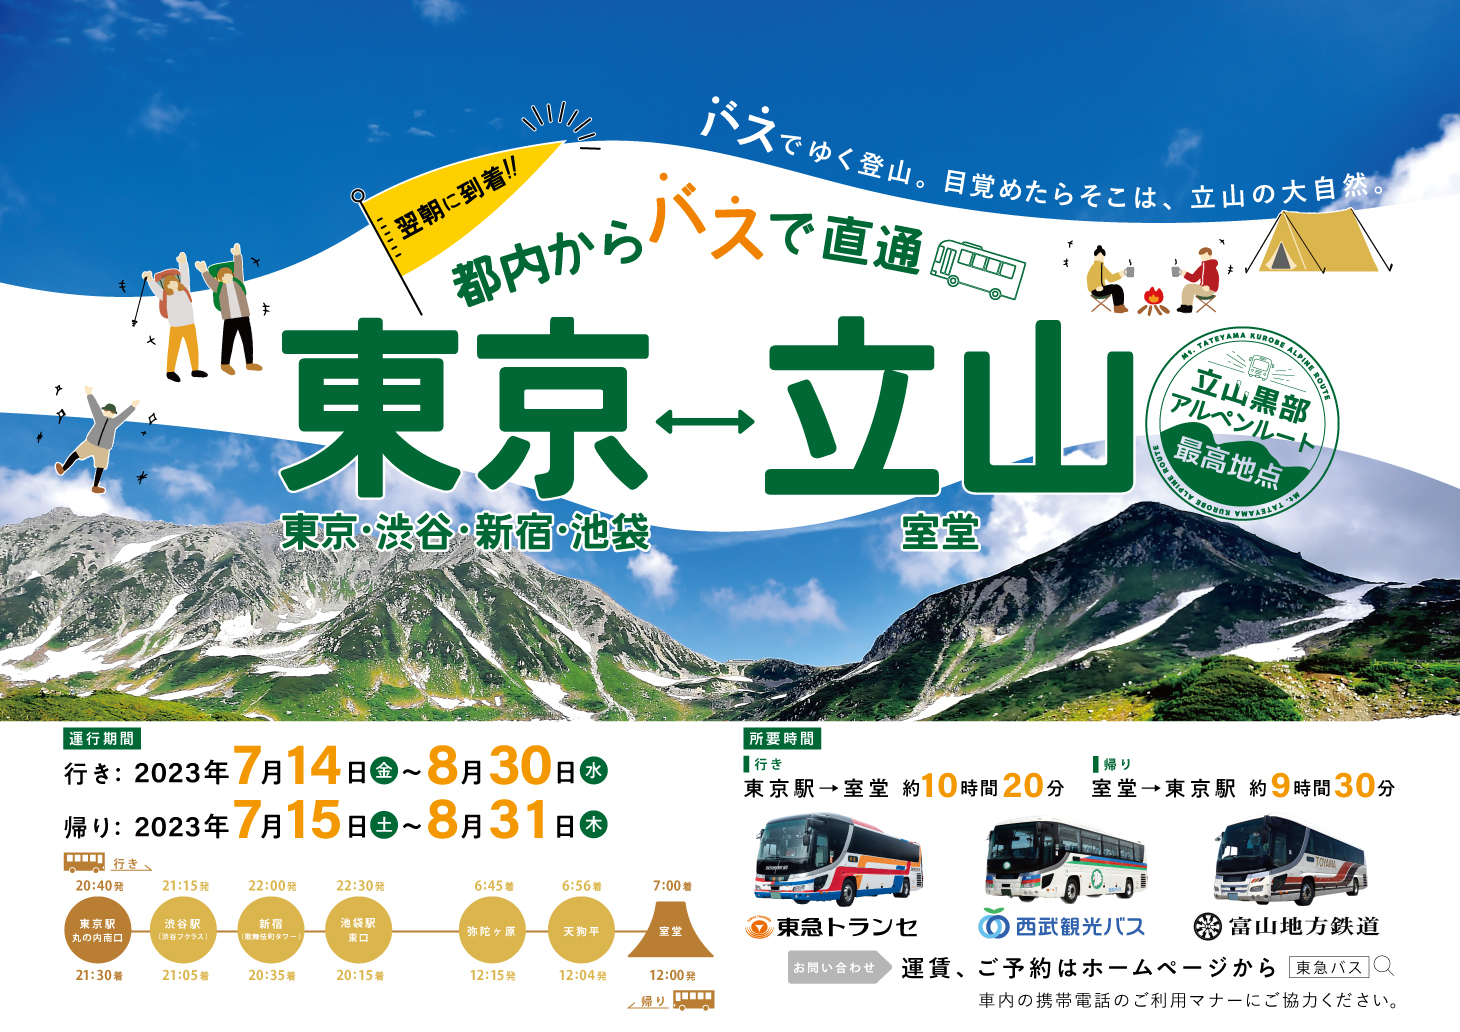 バスでゆく登山。目覚めたらそこは、立山の大自然。首都圏(東京・渋谷・新宿・池袋)から立山「室堂」への直通バス！夏季期間限定で運行開始！